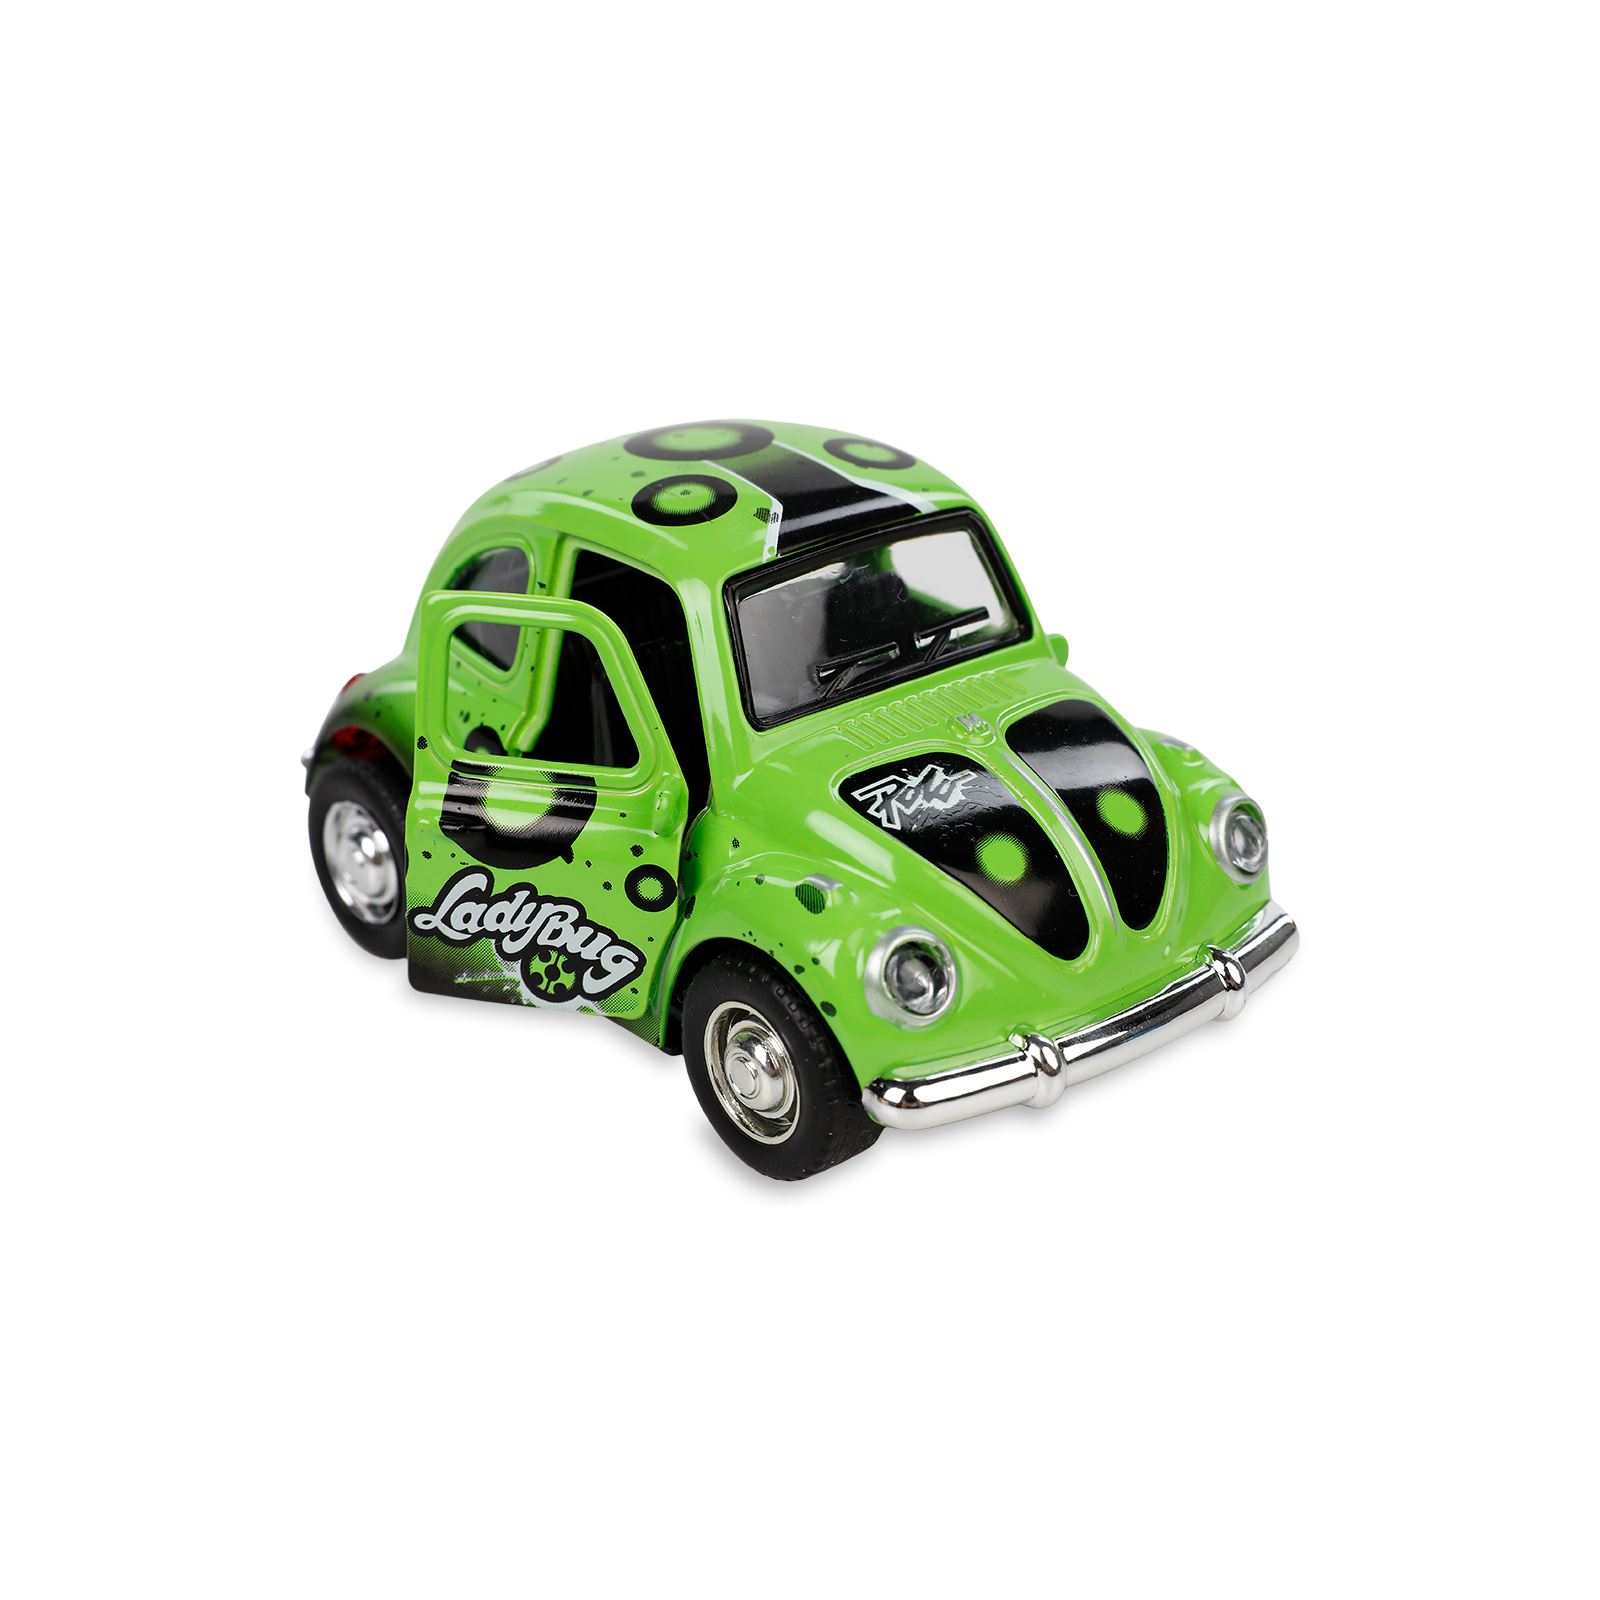 Vardem Oyuncak Çek Bırak Kaplumbağa Desenli Araba Yeşil